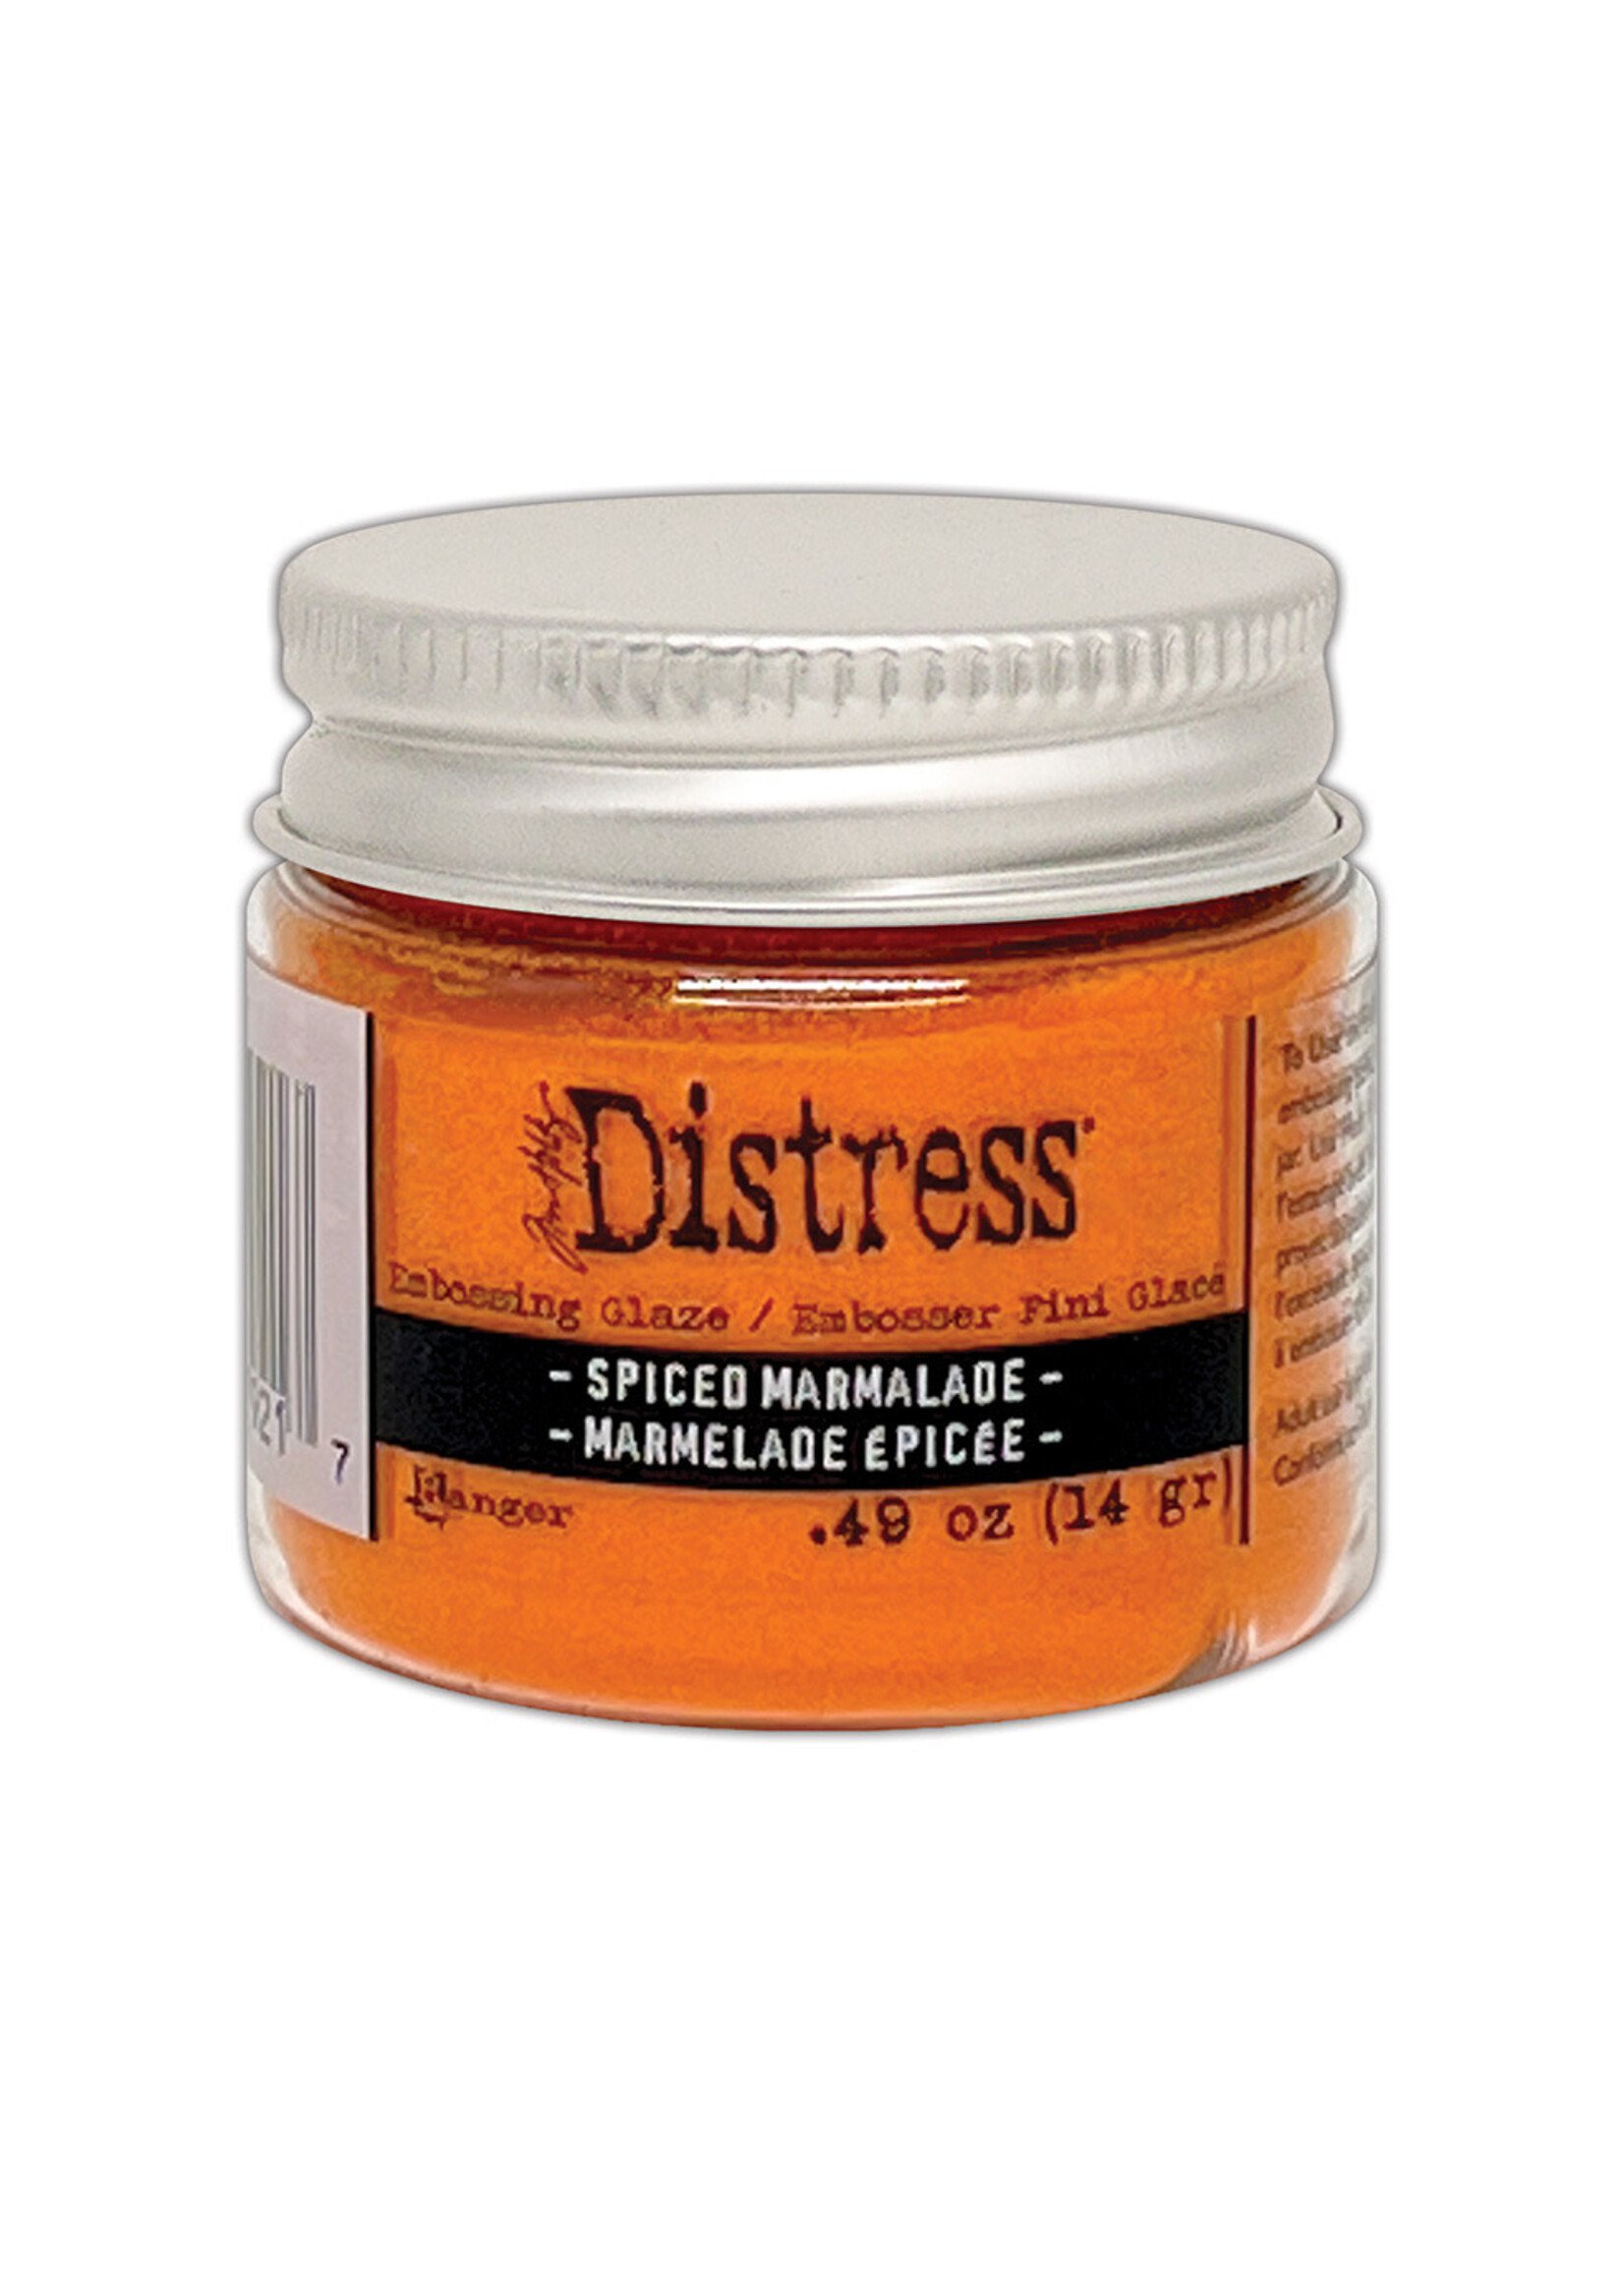 Ranger Tim Holtz Distress Embossing Glaze, Spiced Marmalade